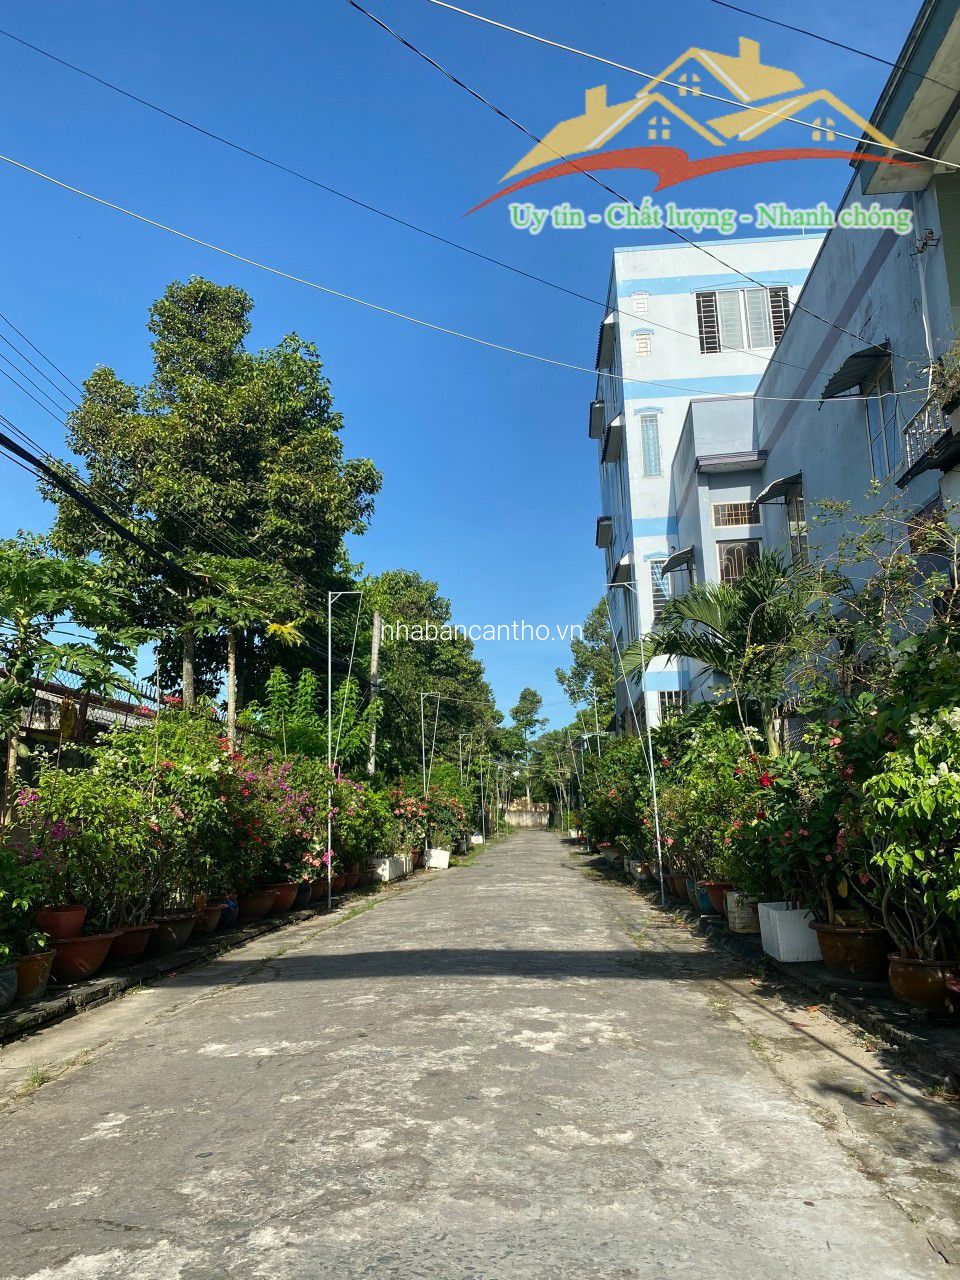 Bán nhà mới xây 1 trệt 1 lầu trục chính hẻm 28 đường Huỳnh Phan Hộ phường Trà An